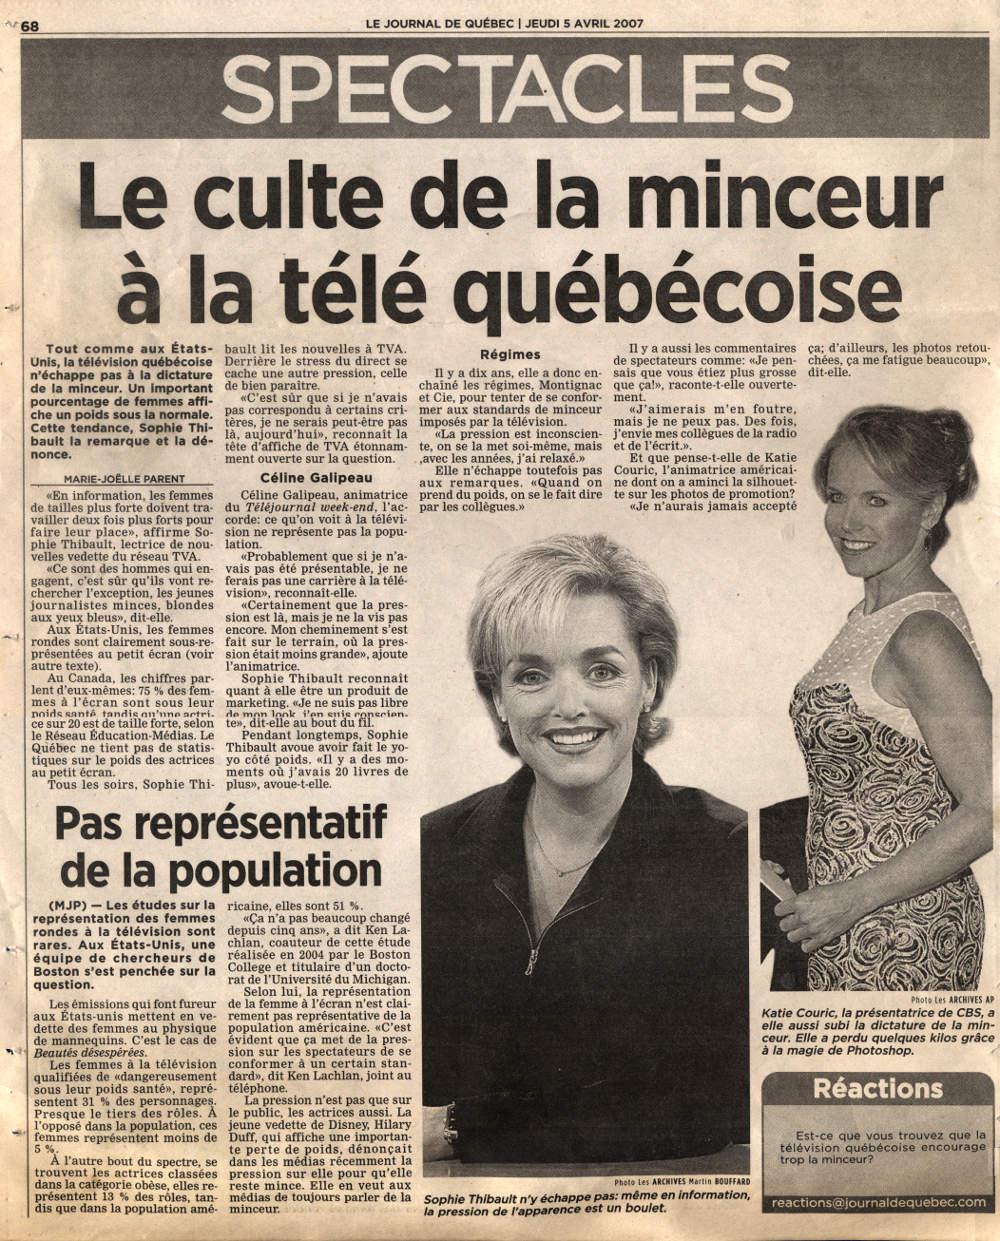 Tout comme aux États-Unis, la télévision québécoise n'échappe pas à la dictature de la minceur. Un important pourcentage de femmes affiche un poids sous la normale. Une tendance que remarque et dénonce Sophie Thibault.